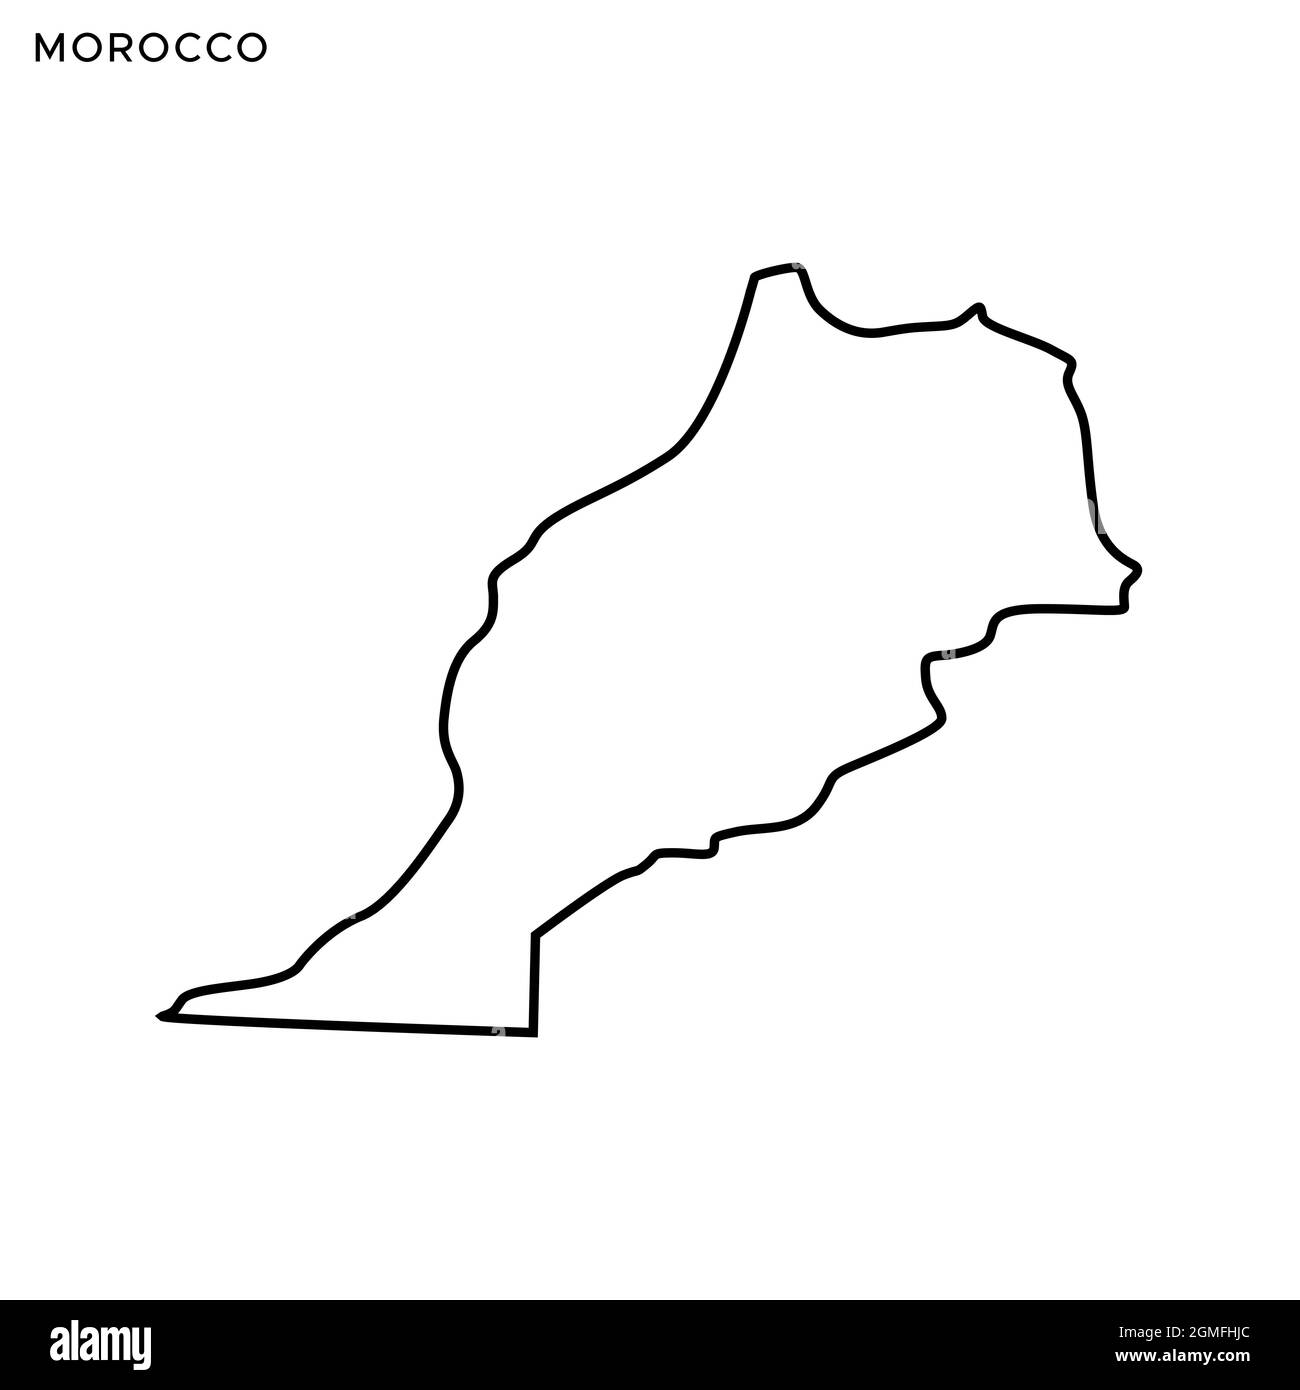 Carte de ligne du modèle de dessin d'illustration de stock de vecteur marocain. Contour modifiable. Vecteur eps 10. Illustration de Vecteur